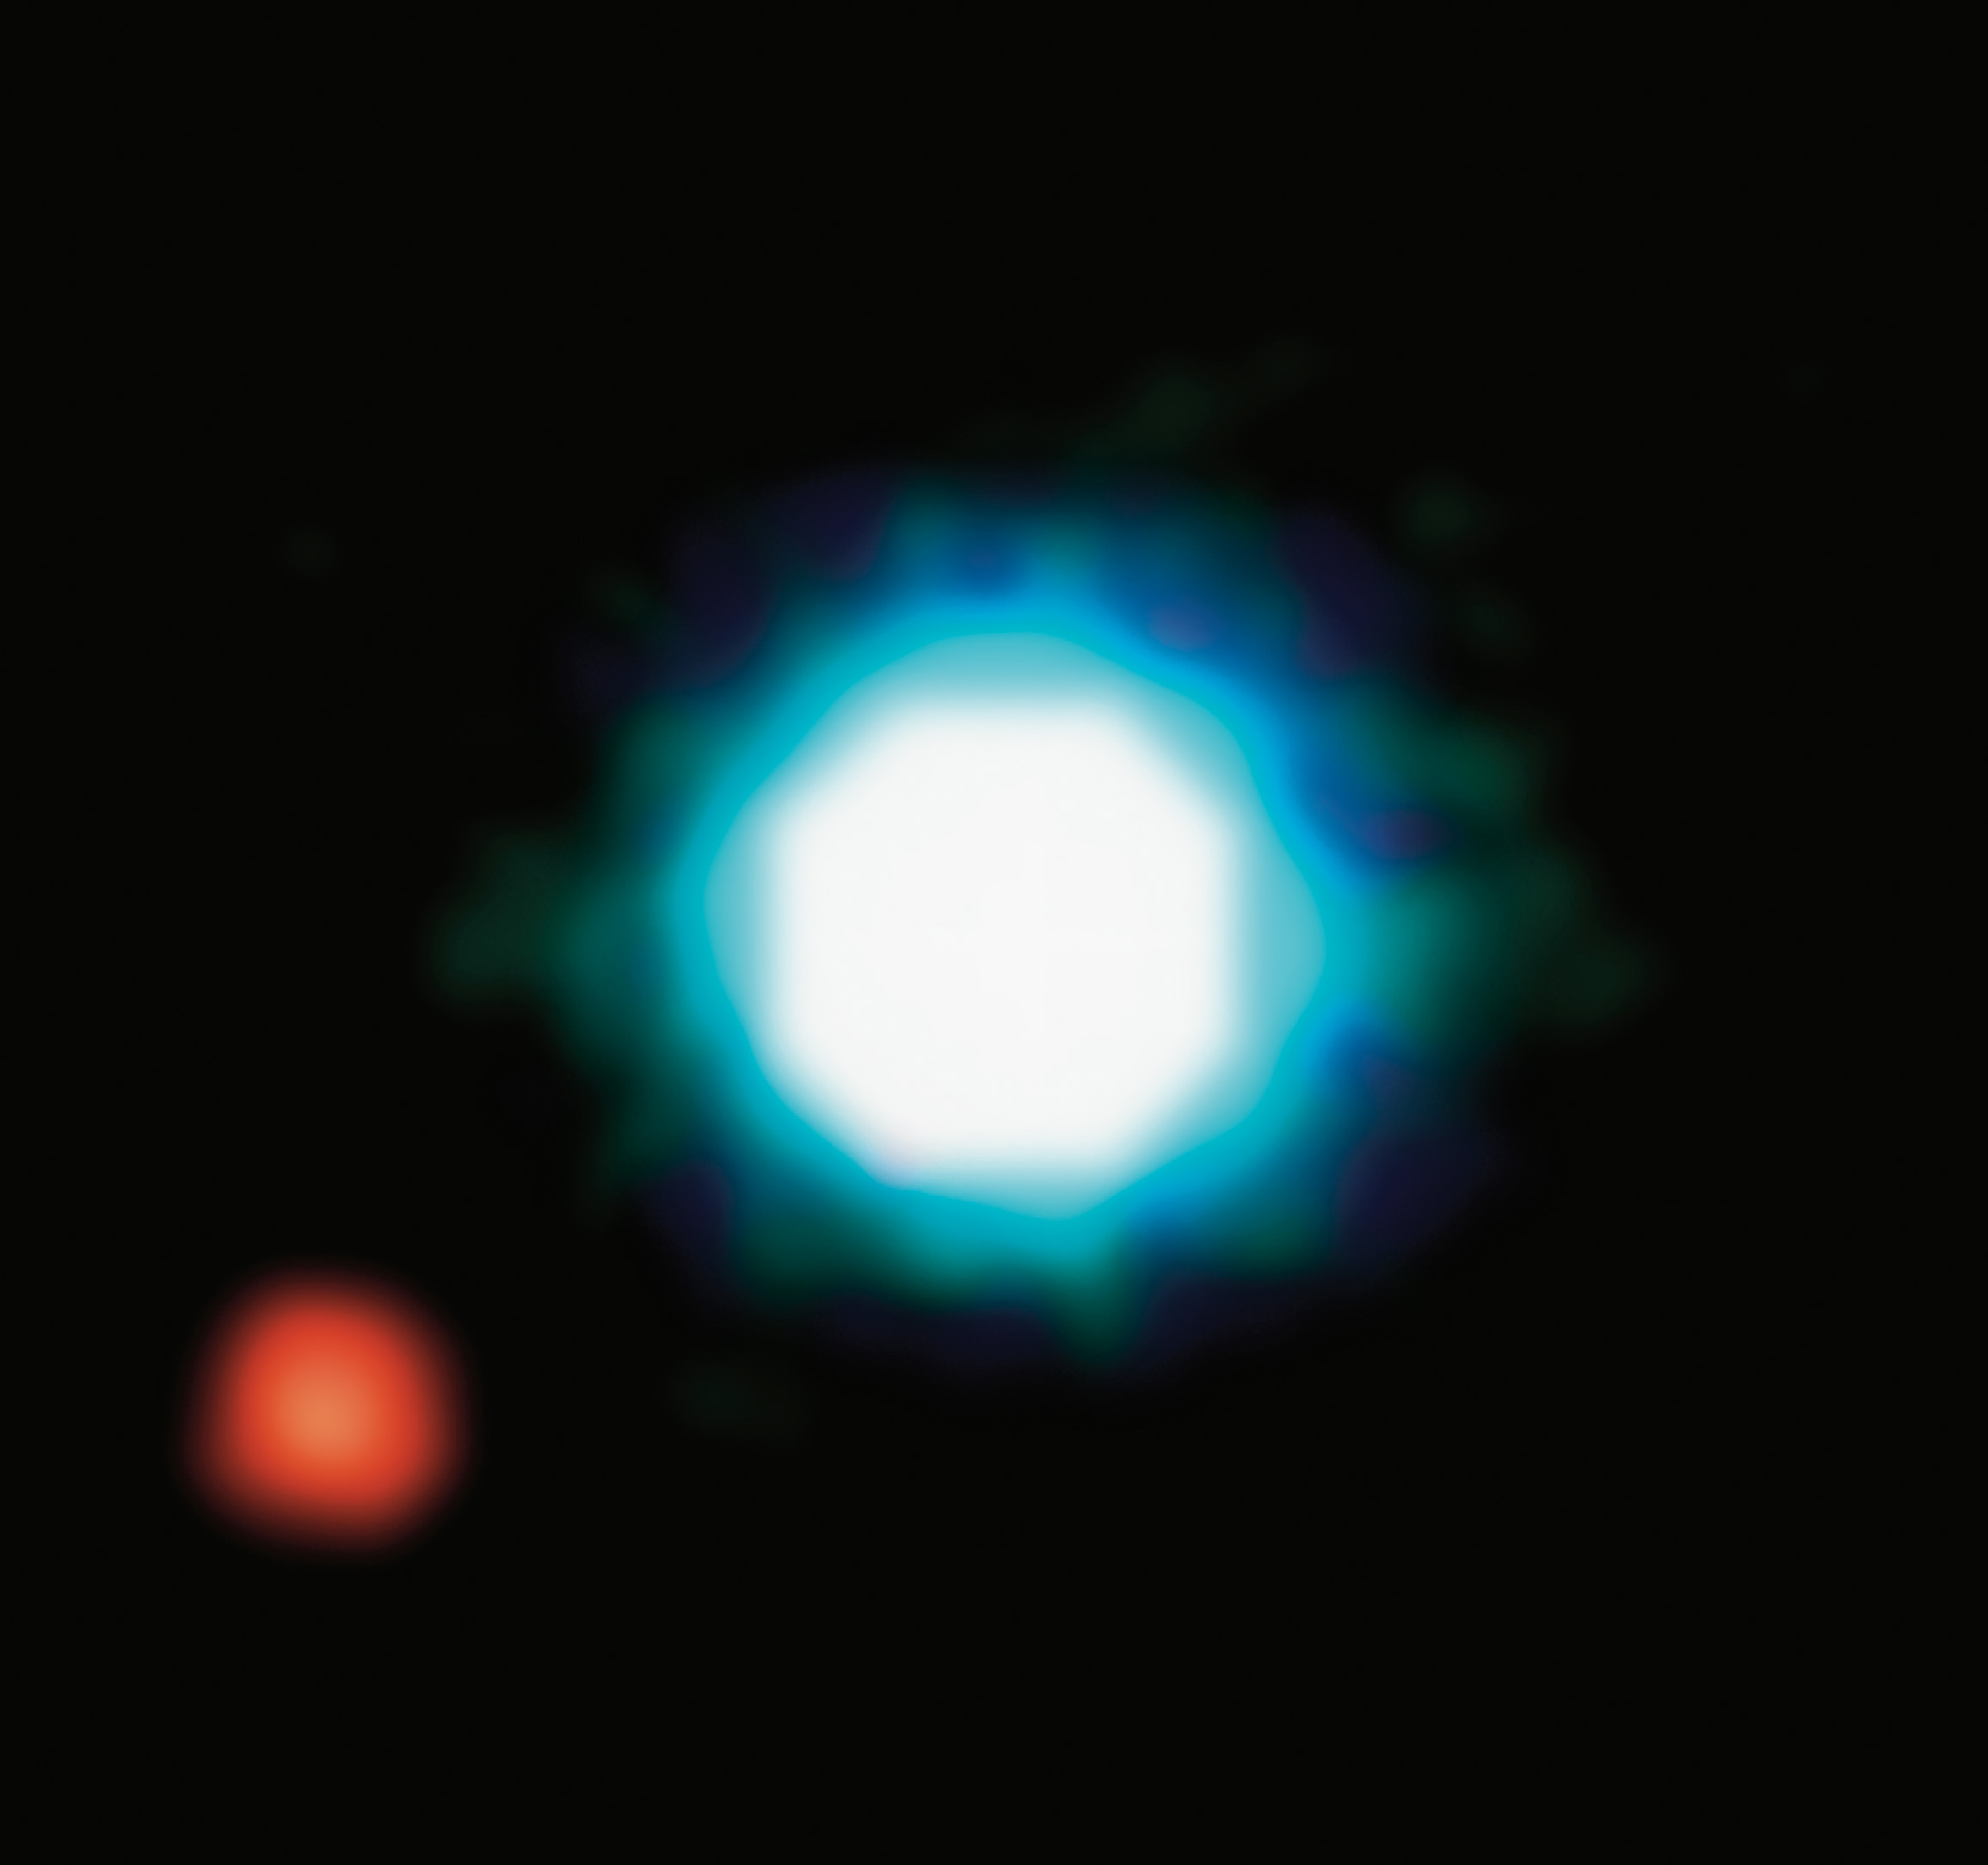 L'exoplanète 2M1207b détectée par imagerie directe